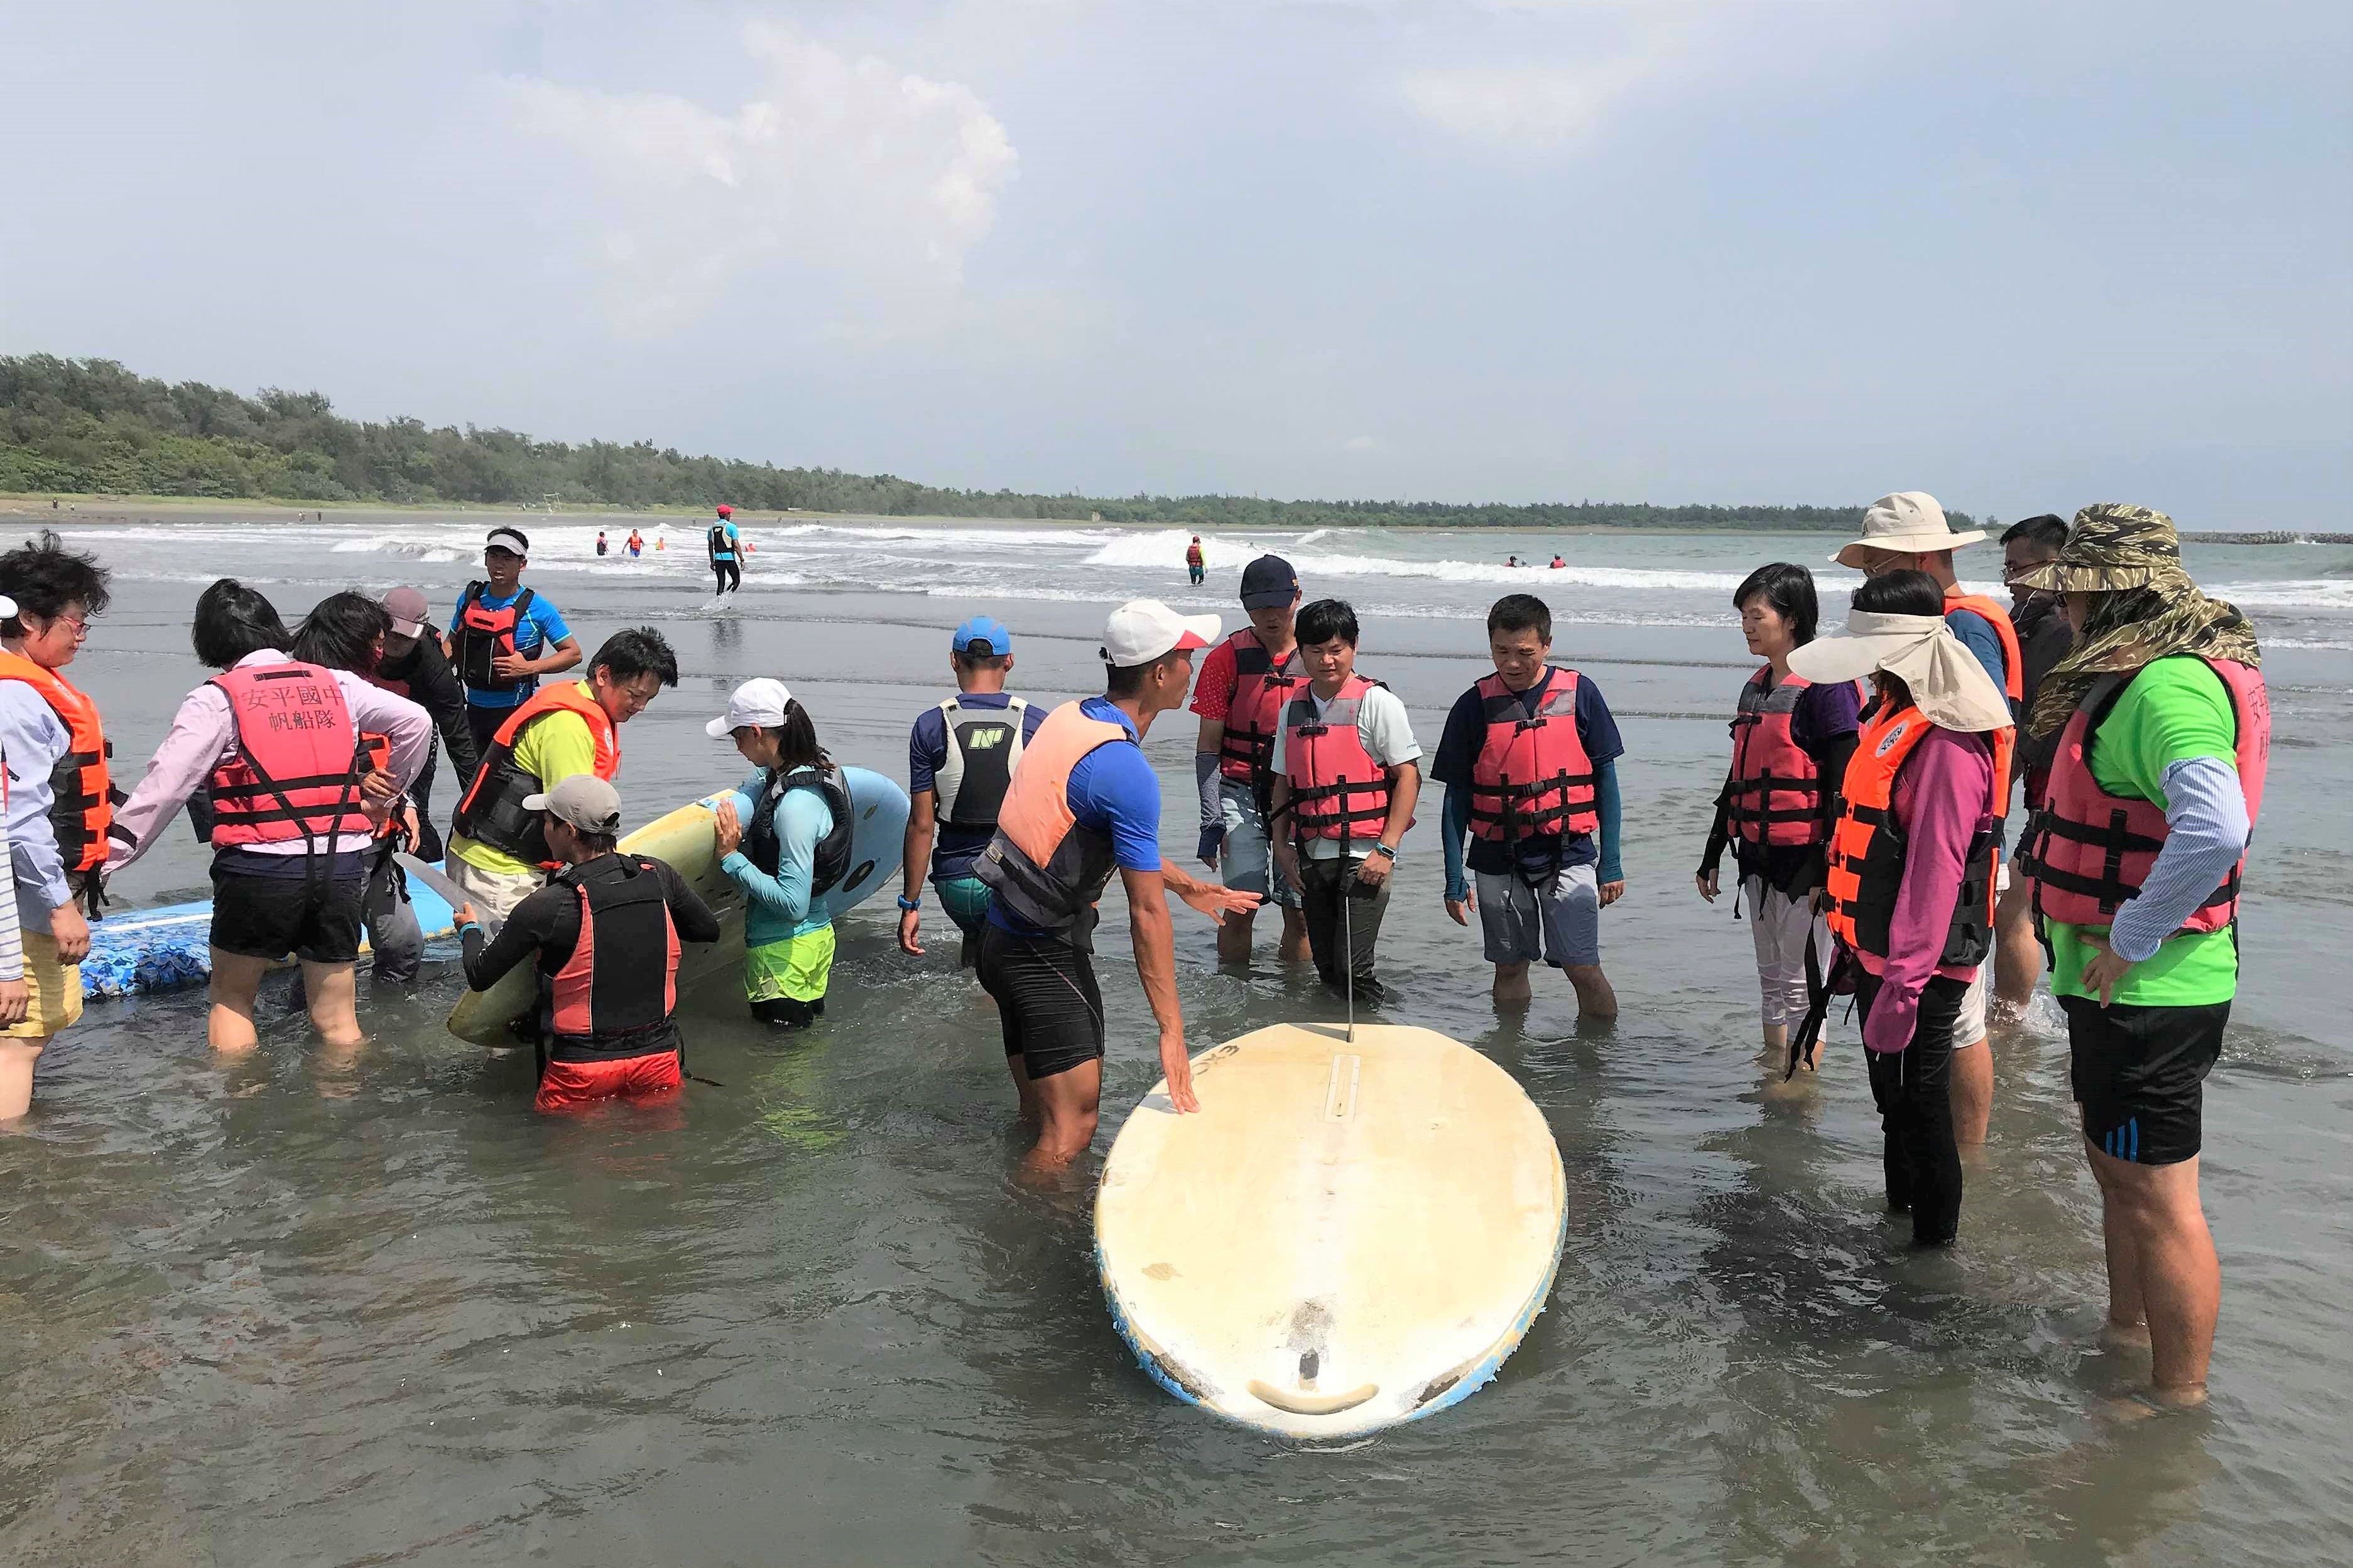 臺南市海洋教育者培訓課程體驗漁光島月牙灣風浪板